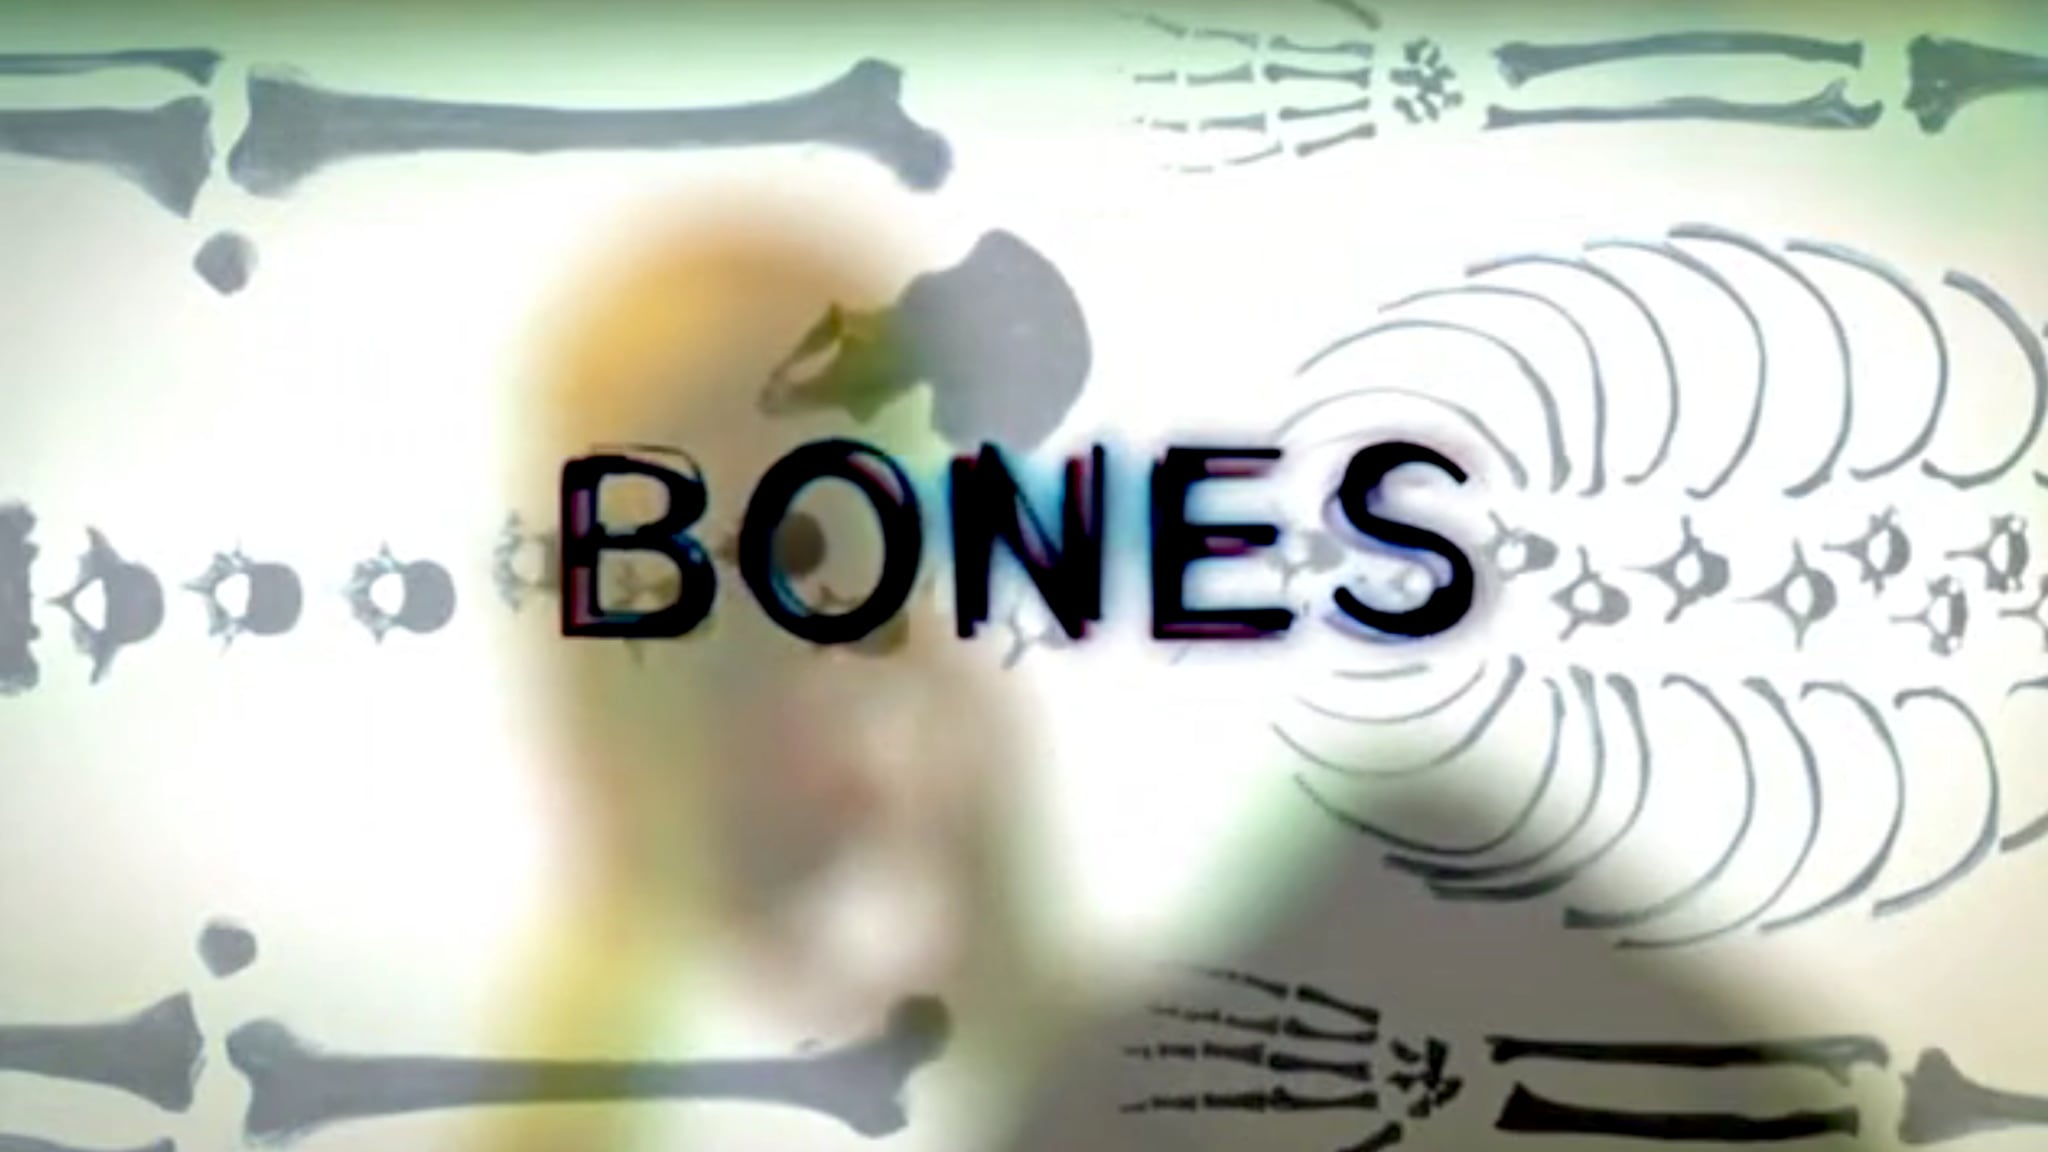 Bones S2E21 - Solo per amore